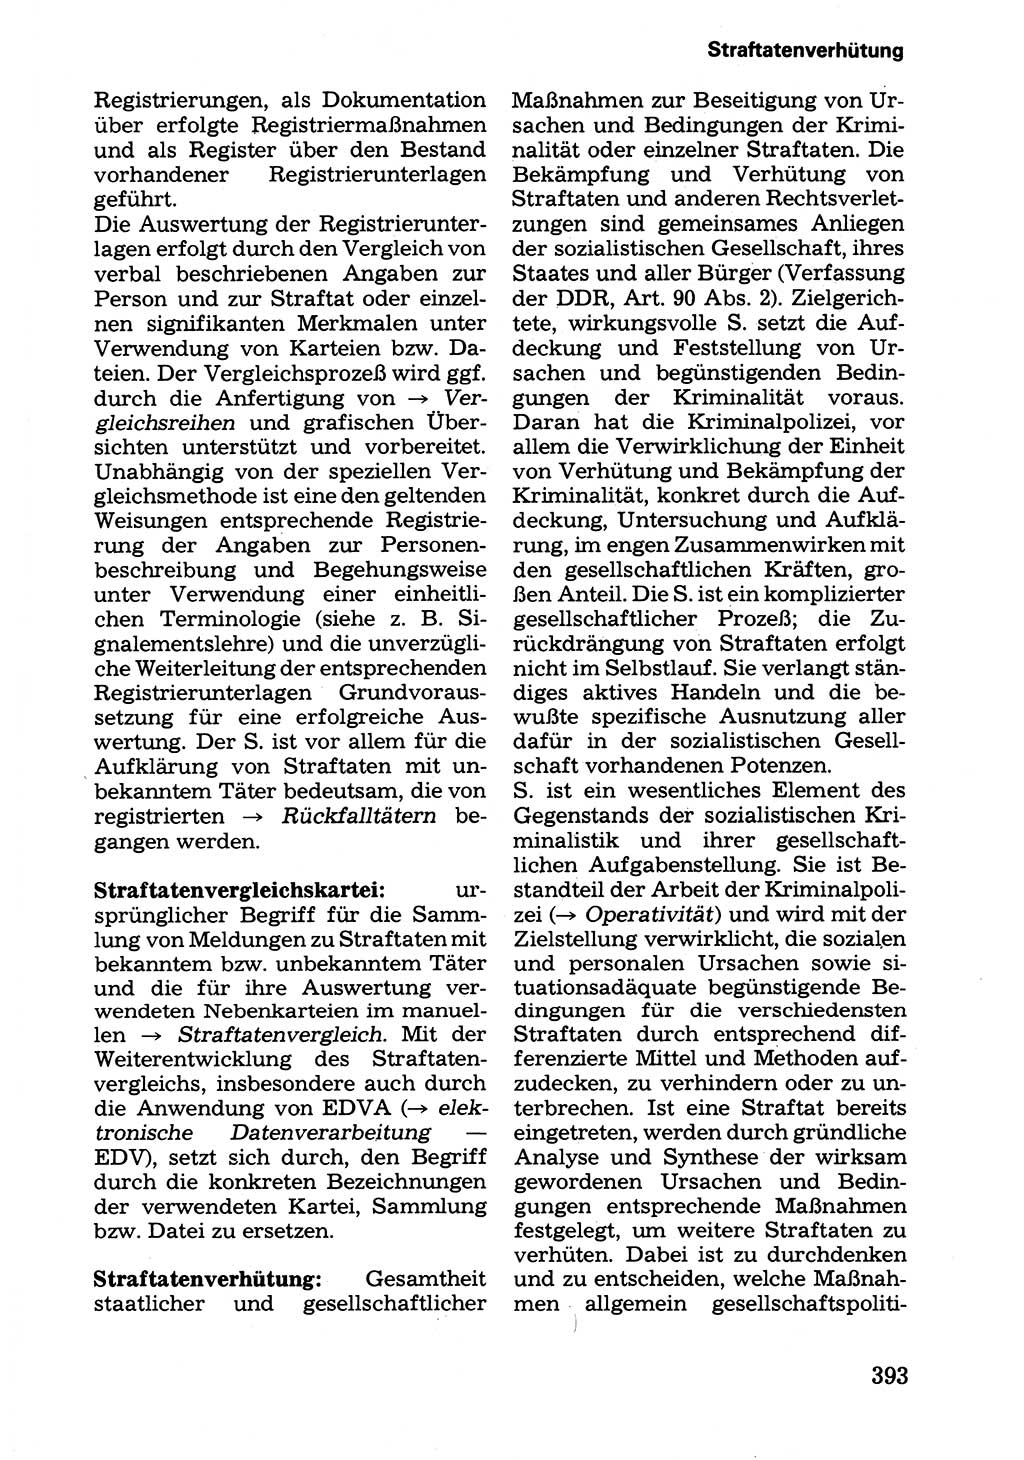 Wörterbuch der sozialistischen Kriminalistik [Deutsche Demokratische Republik (DDR)] 1981, Seite 393 (Wb. soz. Krim. DDR 1981, S. 393)